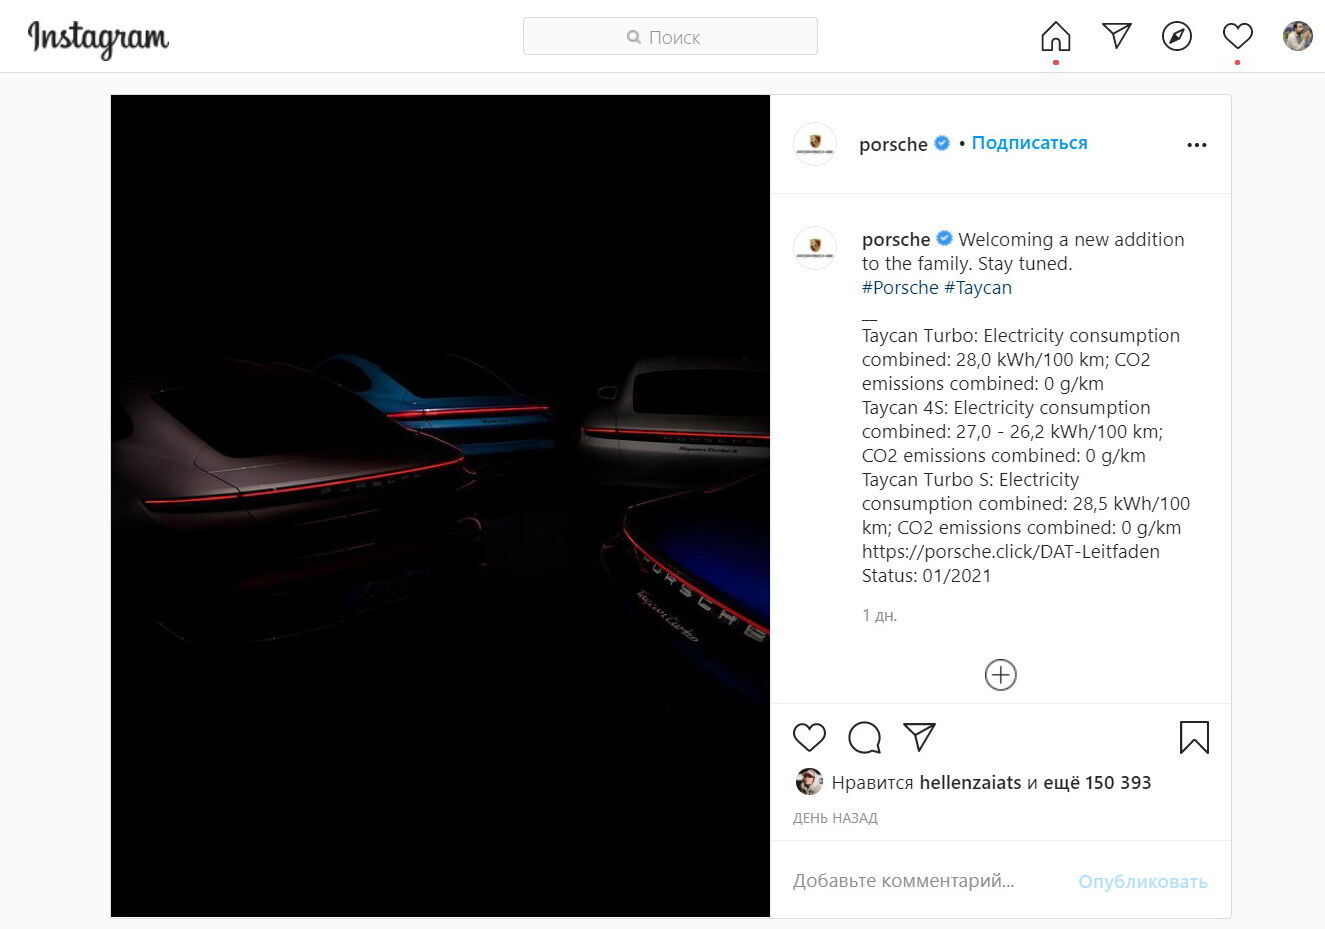 Компания Porsche анонсировала прибавку в семействе электрокаров Taycan на странице в Instagram